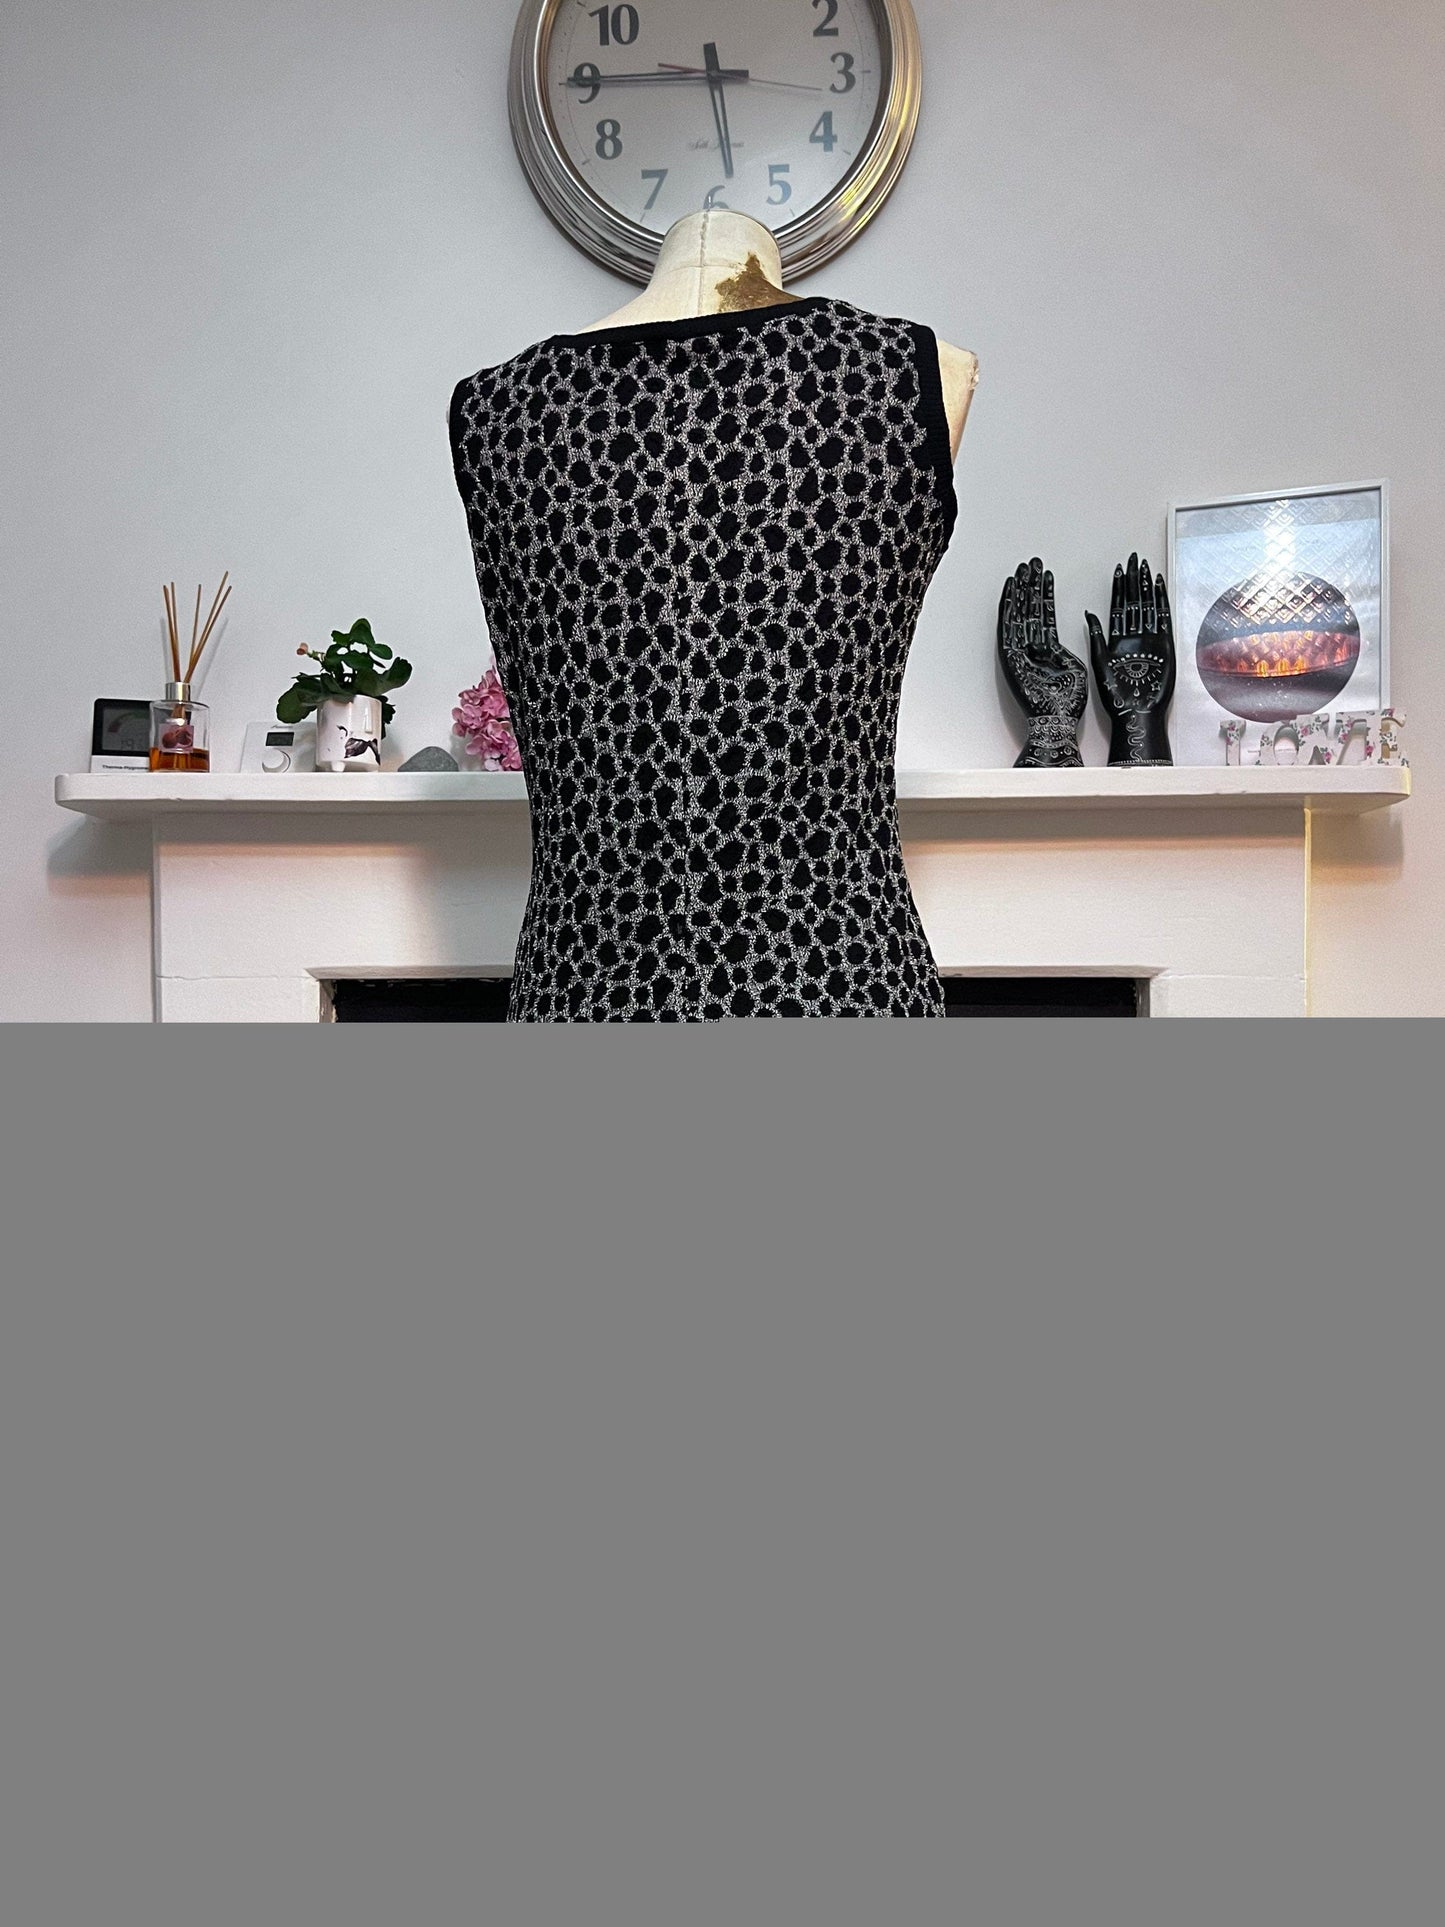 Vintage 80s Black Stretch Knit Leopard Sleeveless Dress neckline with Chunky Buttons   UK8-10